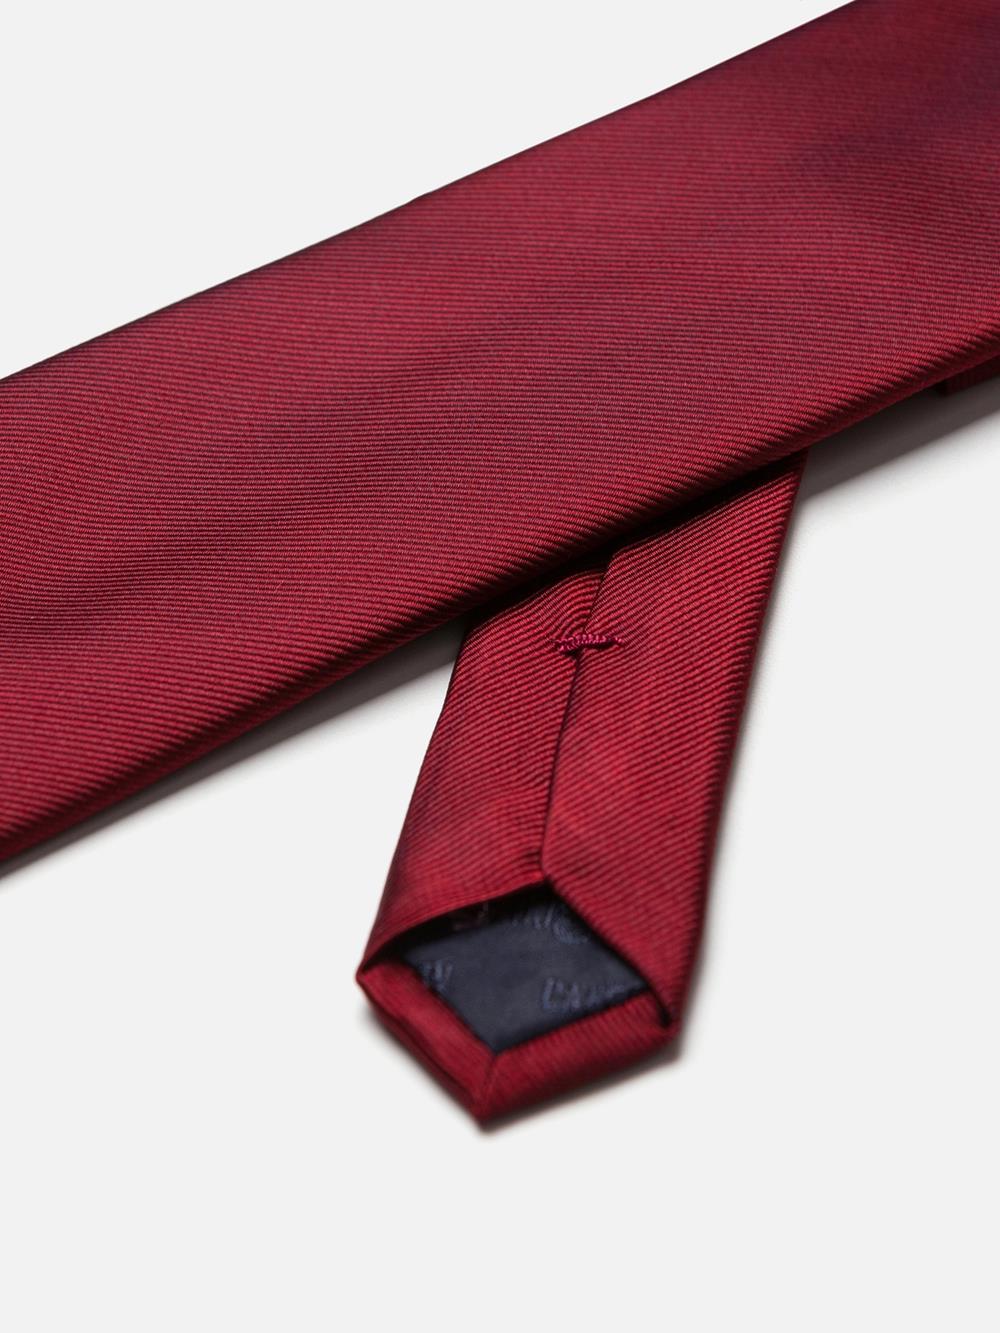 Cravate en soie sergée rouge